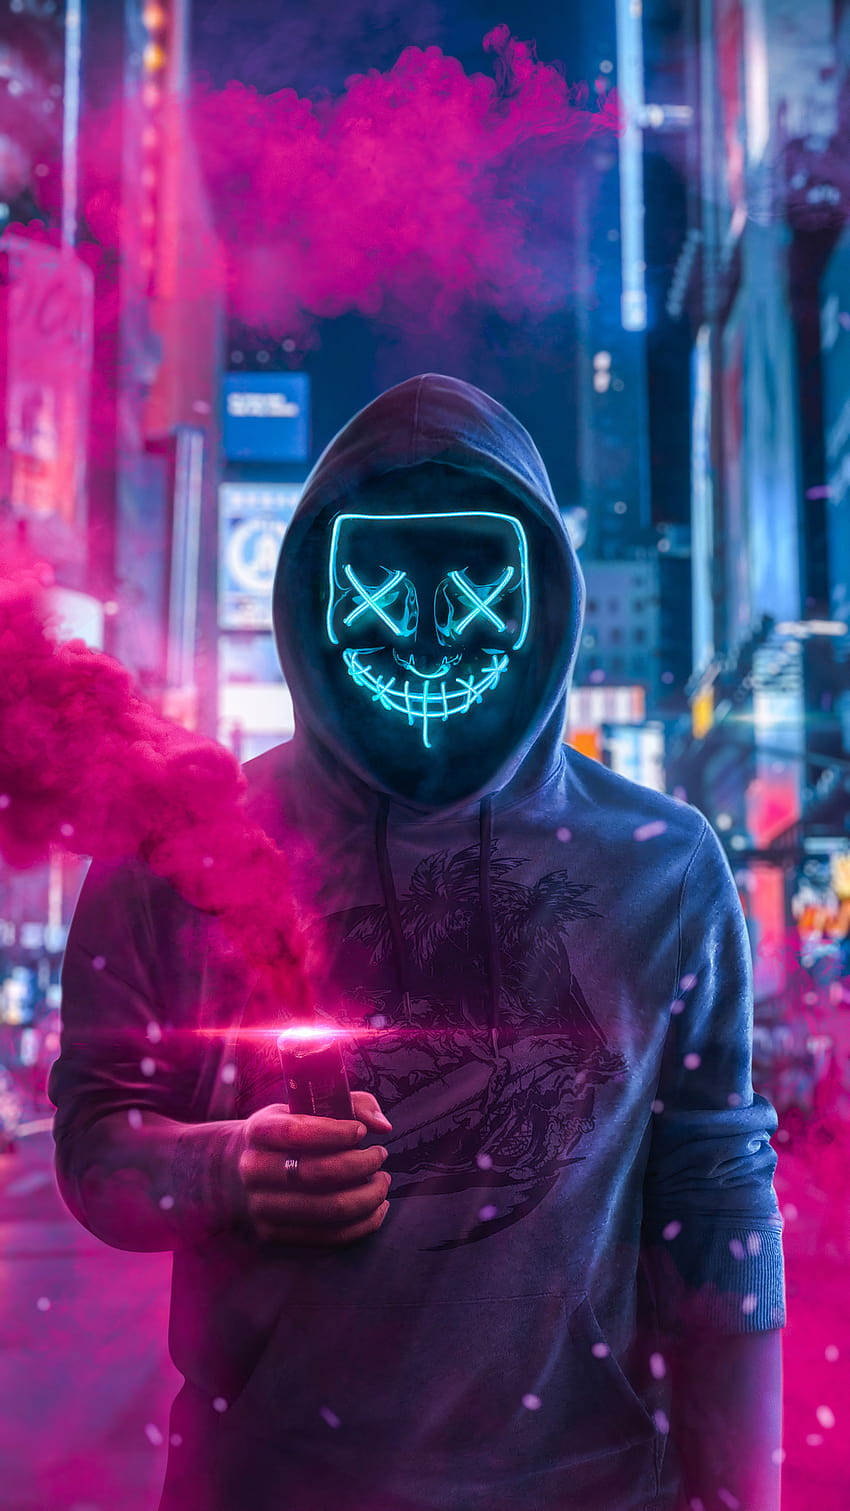 1080x1920 Mask Guy mit Rauchbombe in der Hand Iphone 7,6s,6 Plus, Pixel xl, One Plus 3,3t,5, Hintergründe und rosa Rauchbombe HD-Handy-Hintergrundbild